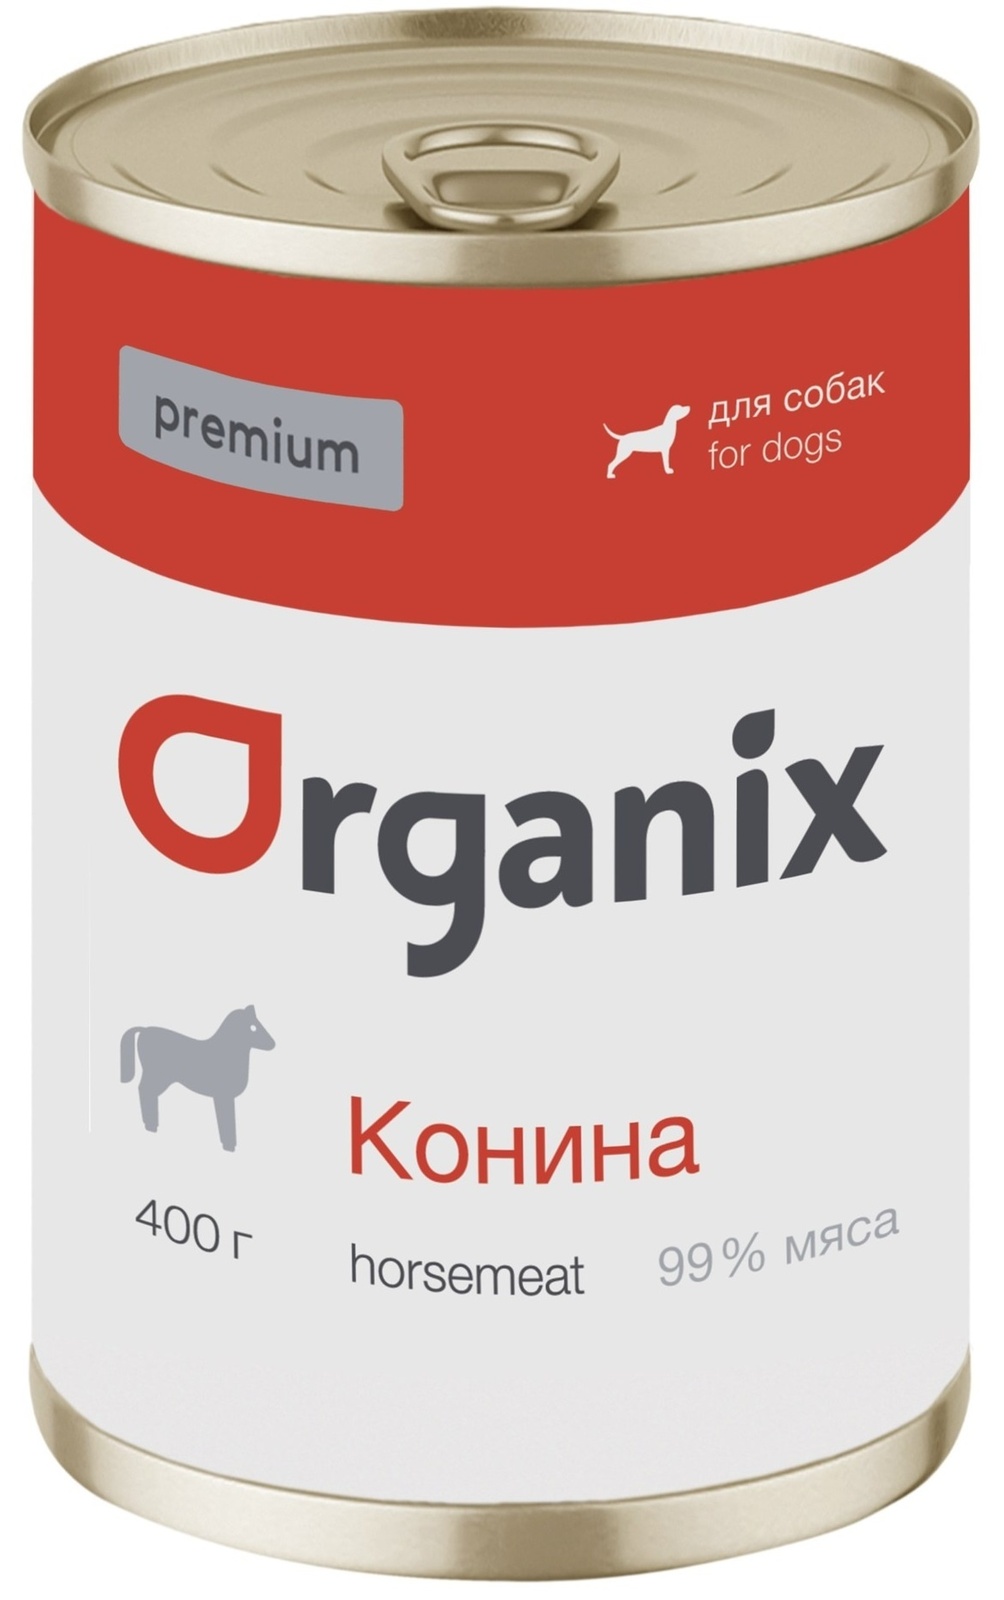 Organix консервы Organix монобелковые премиум консервы для собак, с кониной (400 г) 42932